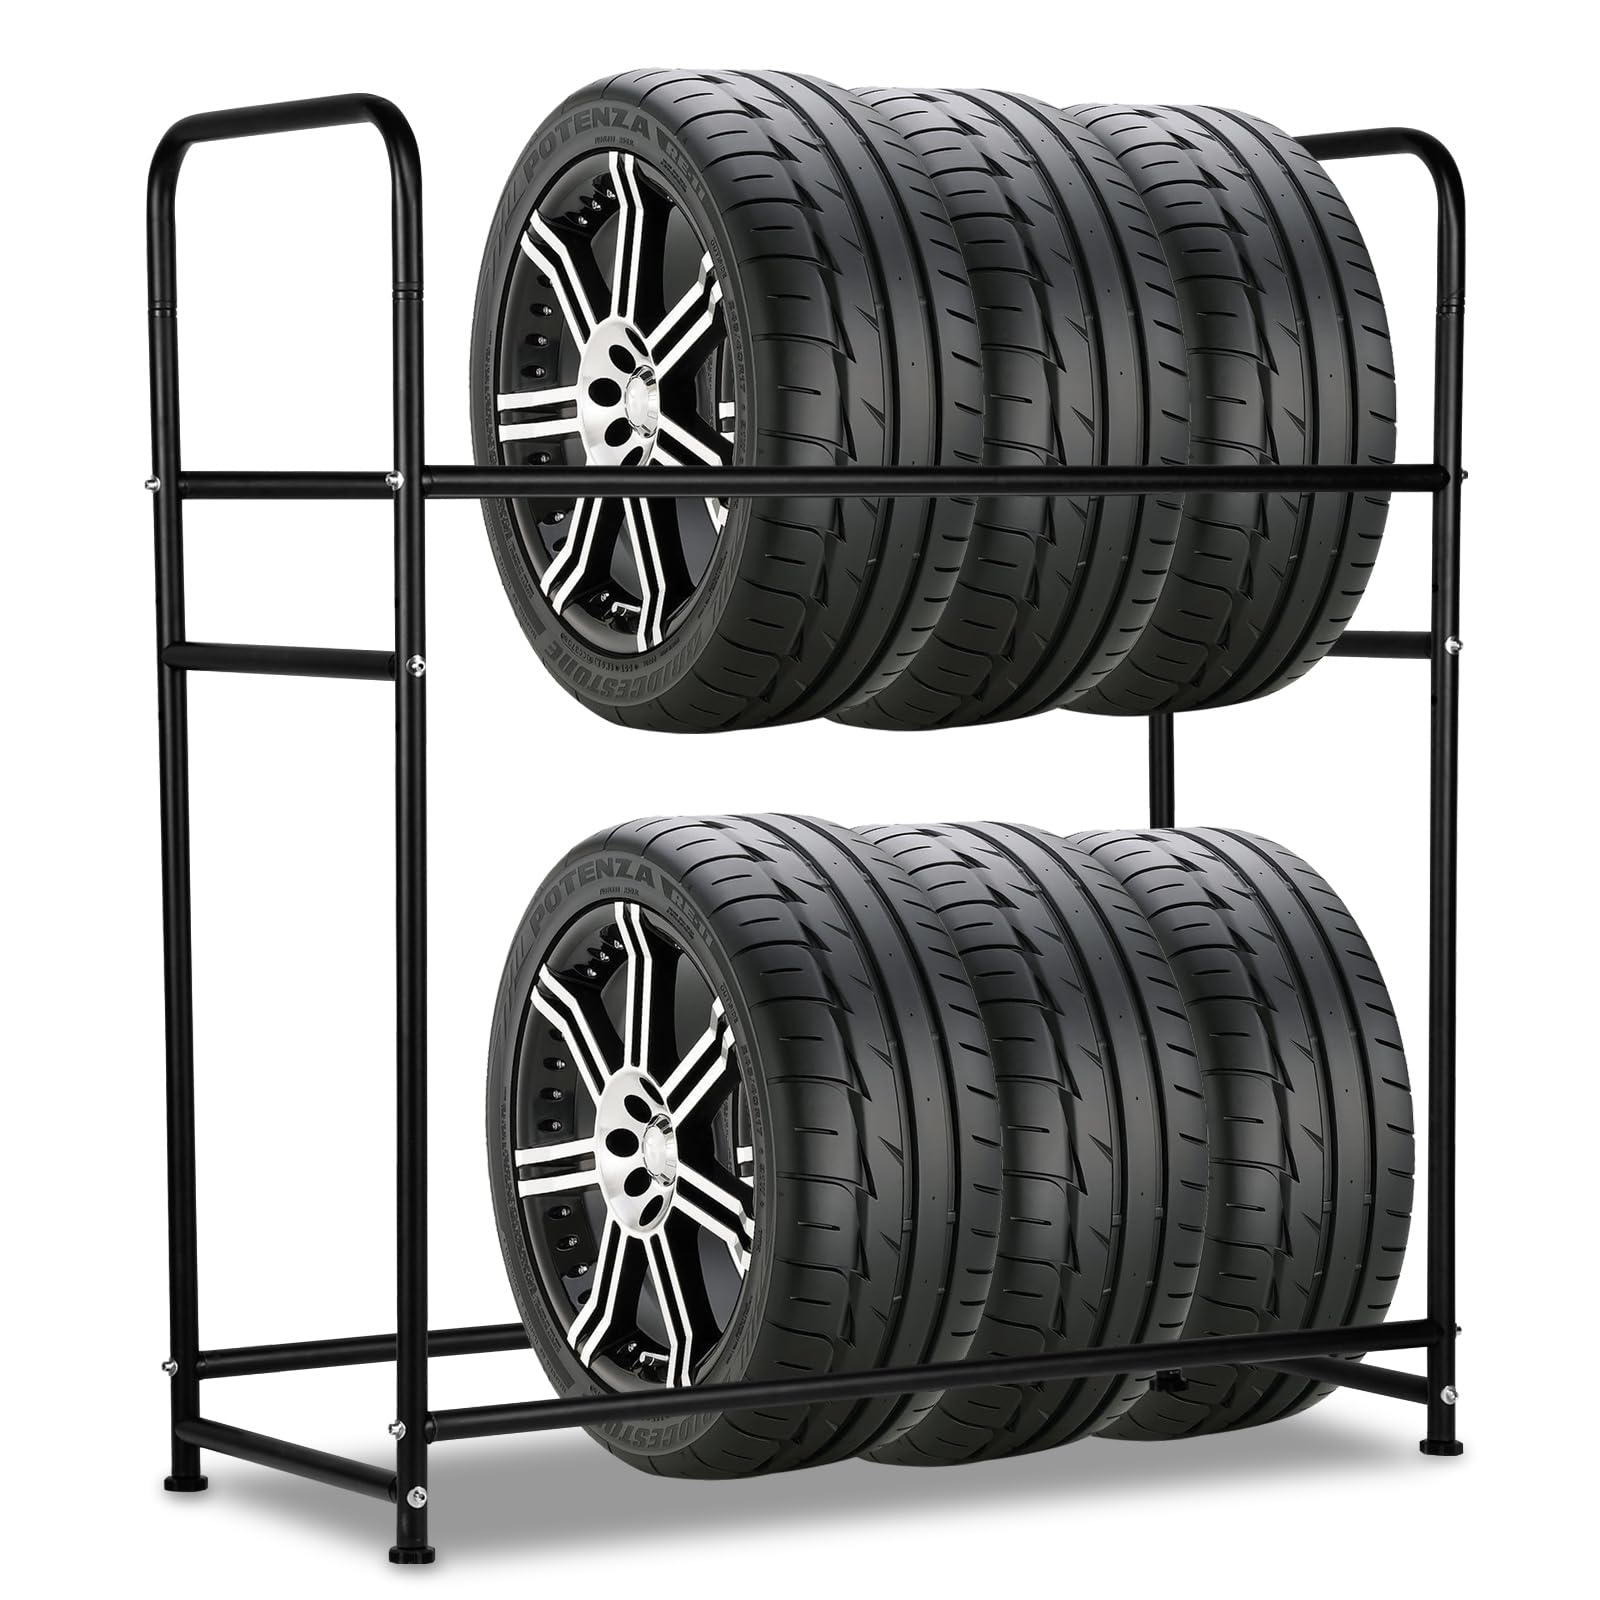 Daromigo reifenregal 8 Reifen,Reifenhalter verstellbar 107 x 46 x 117cm,Reifenständer mit Reifenschutzhülle,Reifen aufbewahrung Ladekapazität 180kg, für Garage,Werkstatt von Daromigo